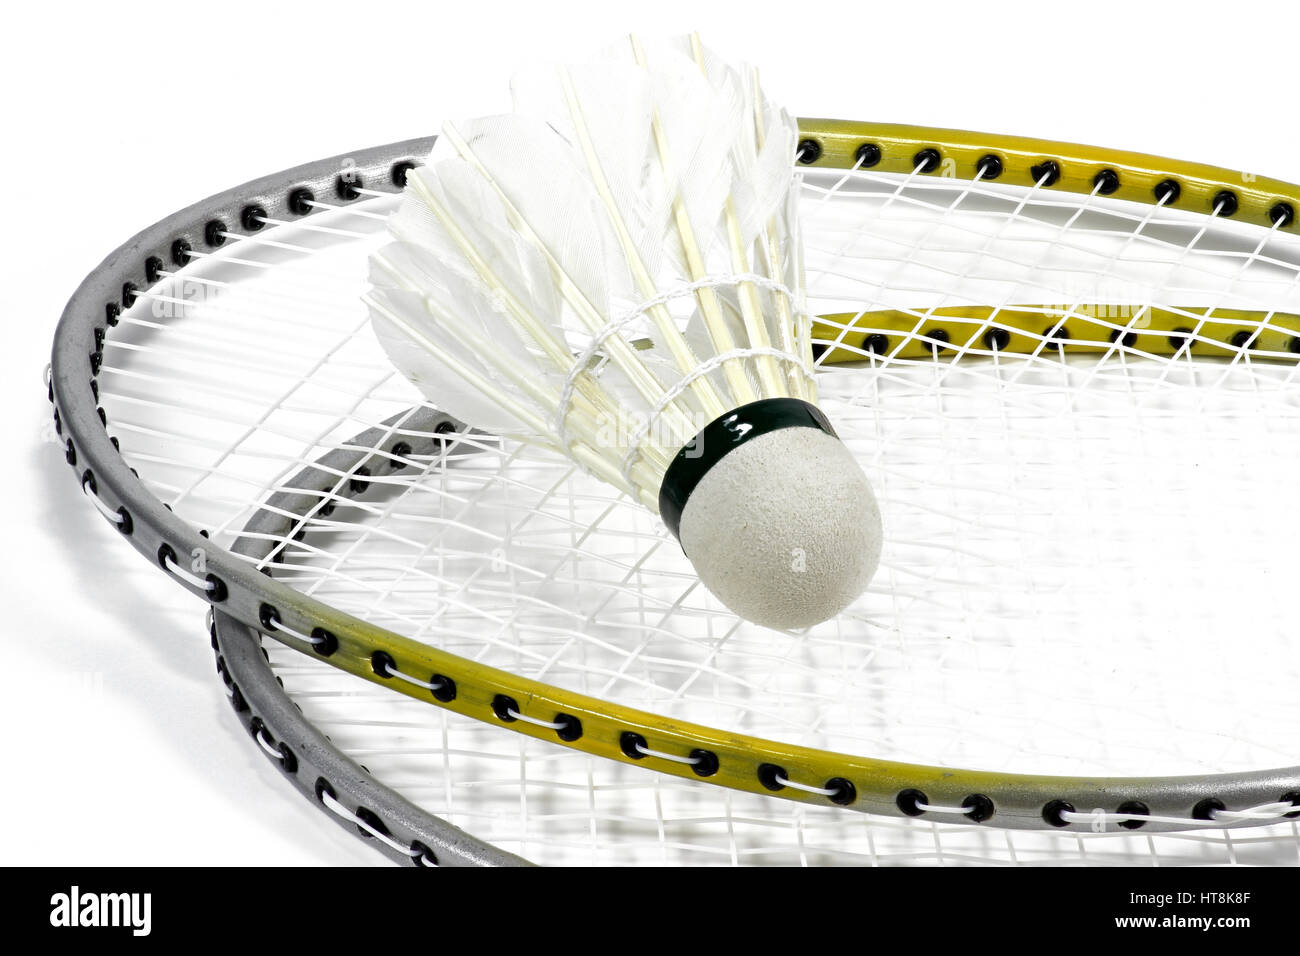 L'équipement de badminton sur fond blanc Photo Stock - Alamy